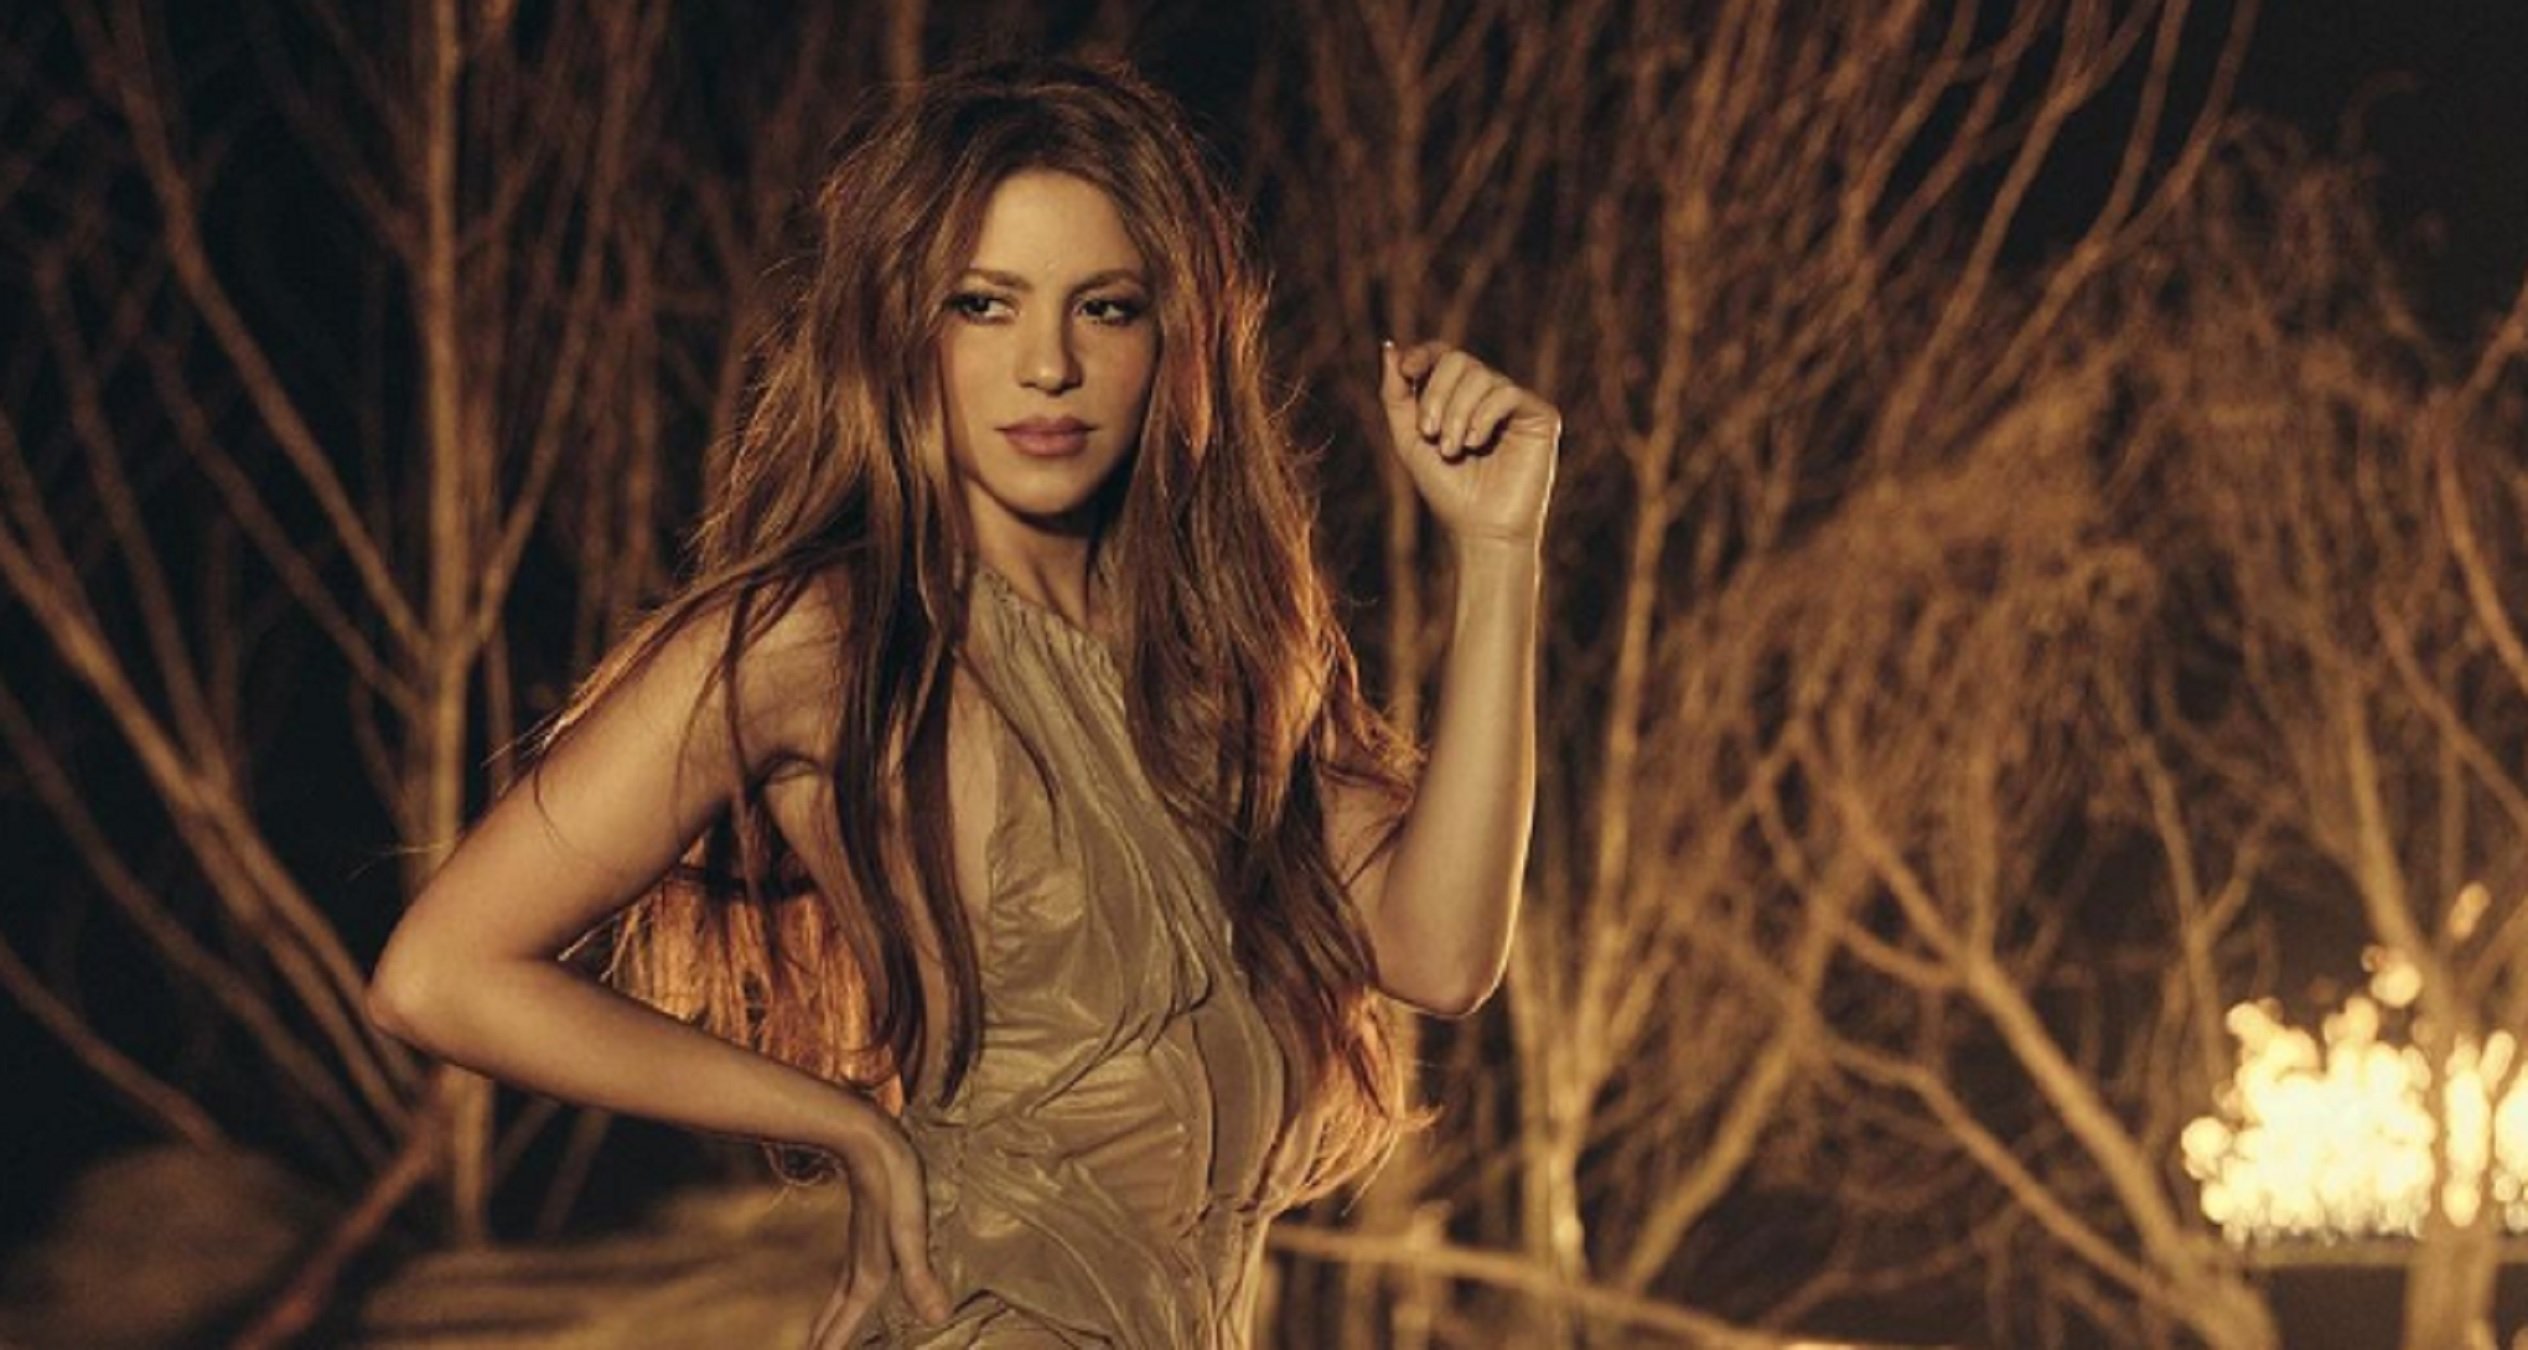 La vida íntima de Patricia: la hermana valenciana de Shakira a la que no le gustan los focos